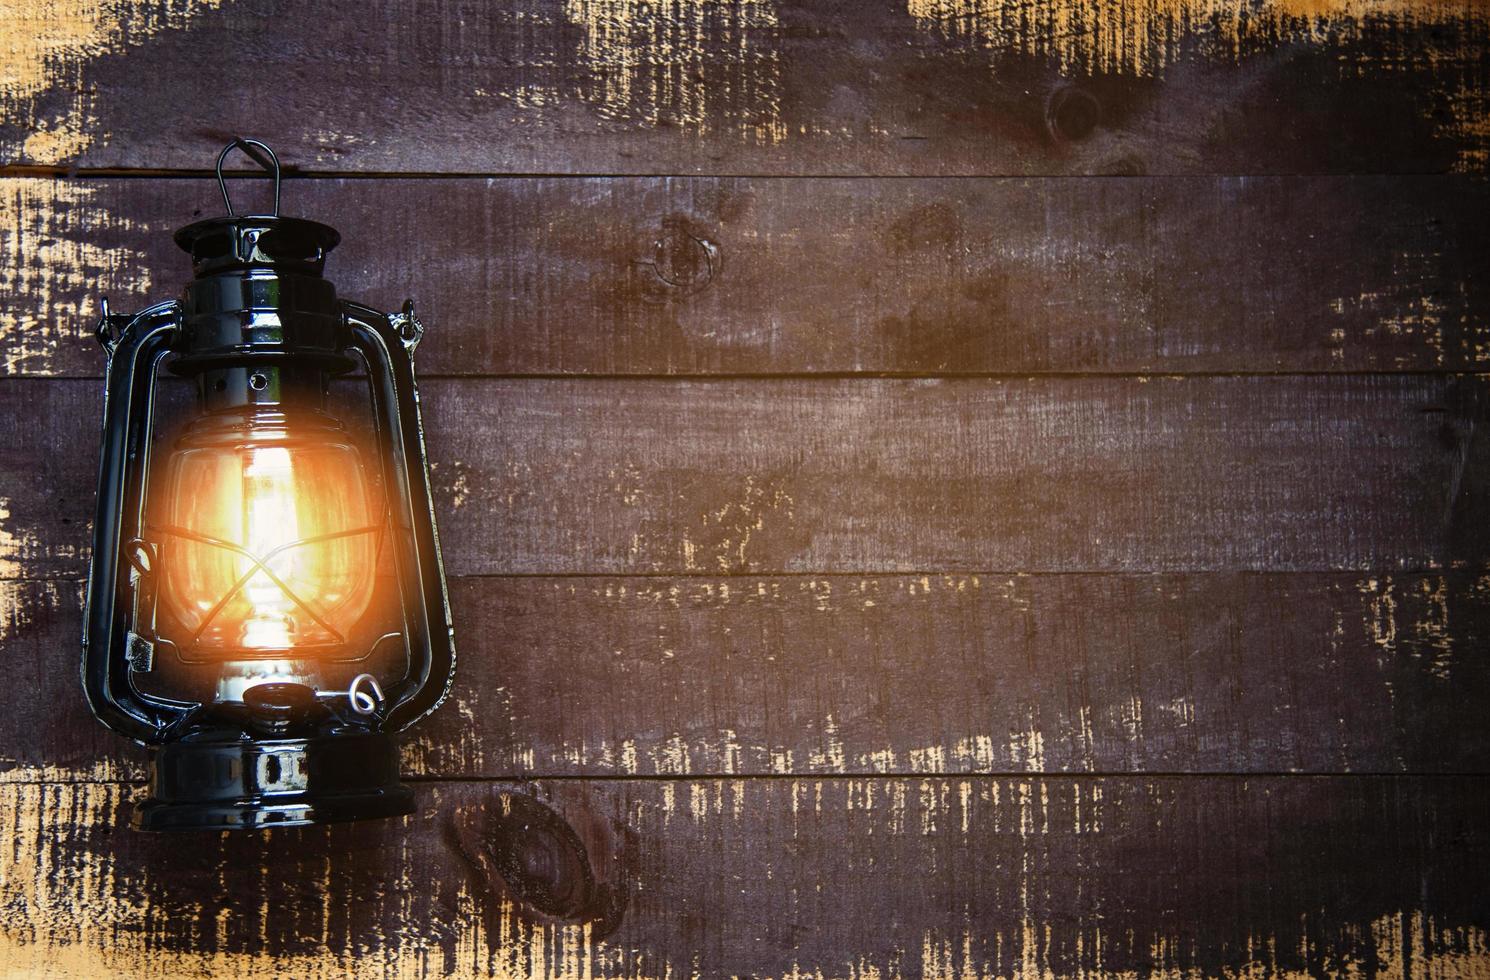 lámpara de aceite por la noche en una pared de madera - farol viejo vintage negro clásico foto